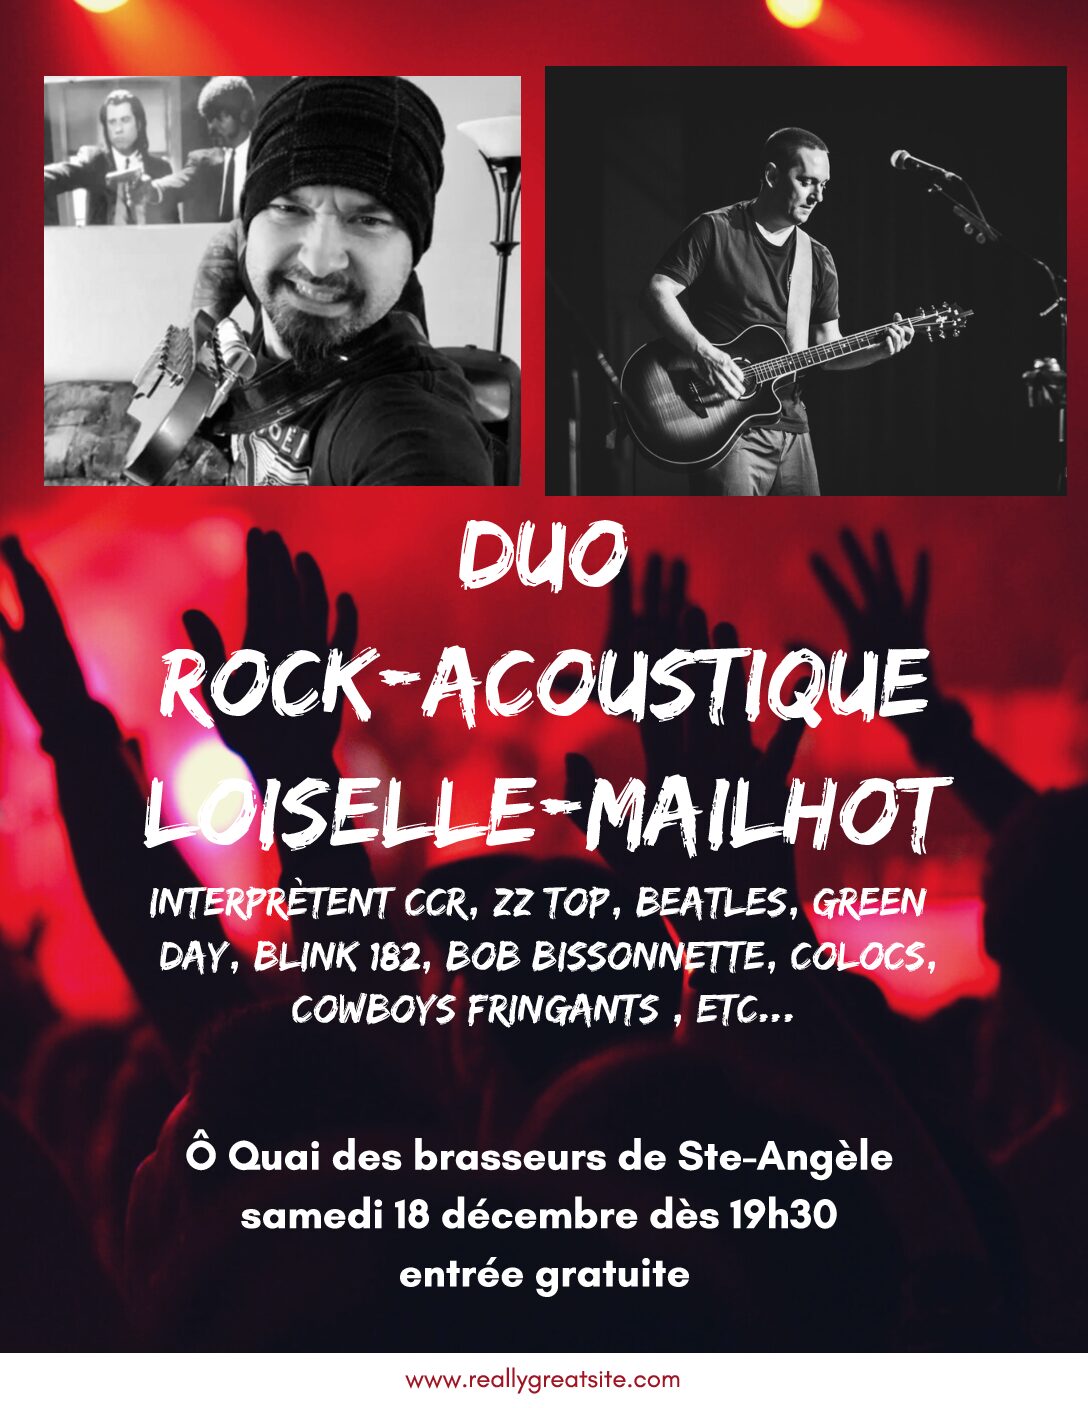 Duo rock acoustique Loiselle et Mailhot